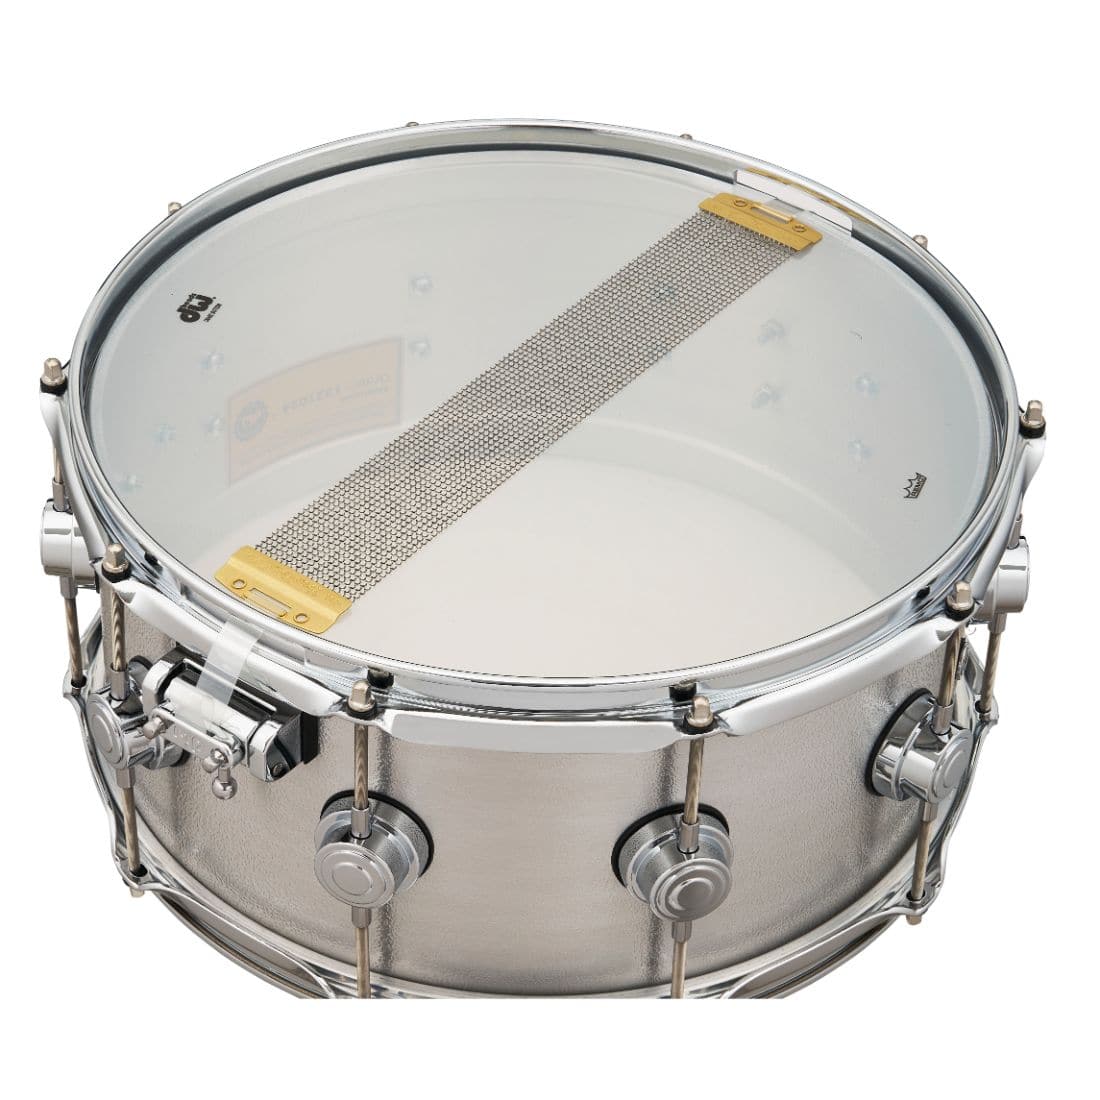 DW Collectors Cast Aluminum Snare Drum 14x6.5 Chrome Hardware